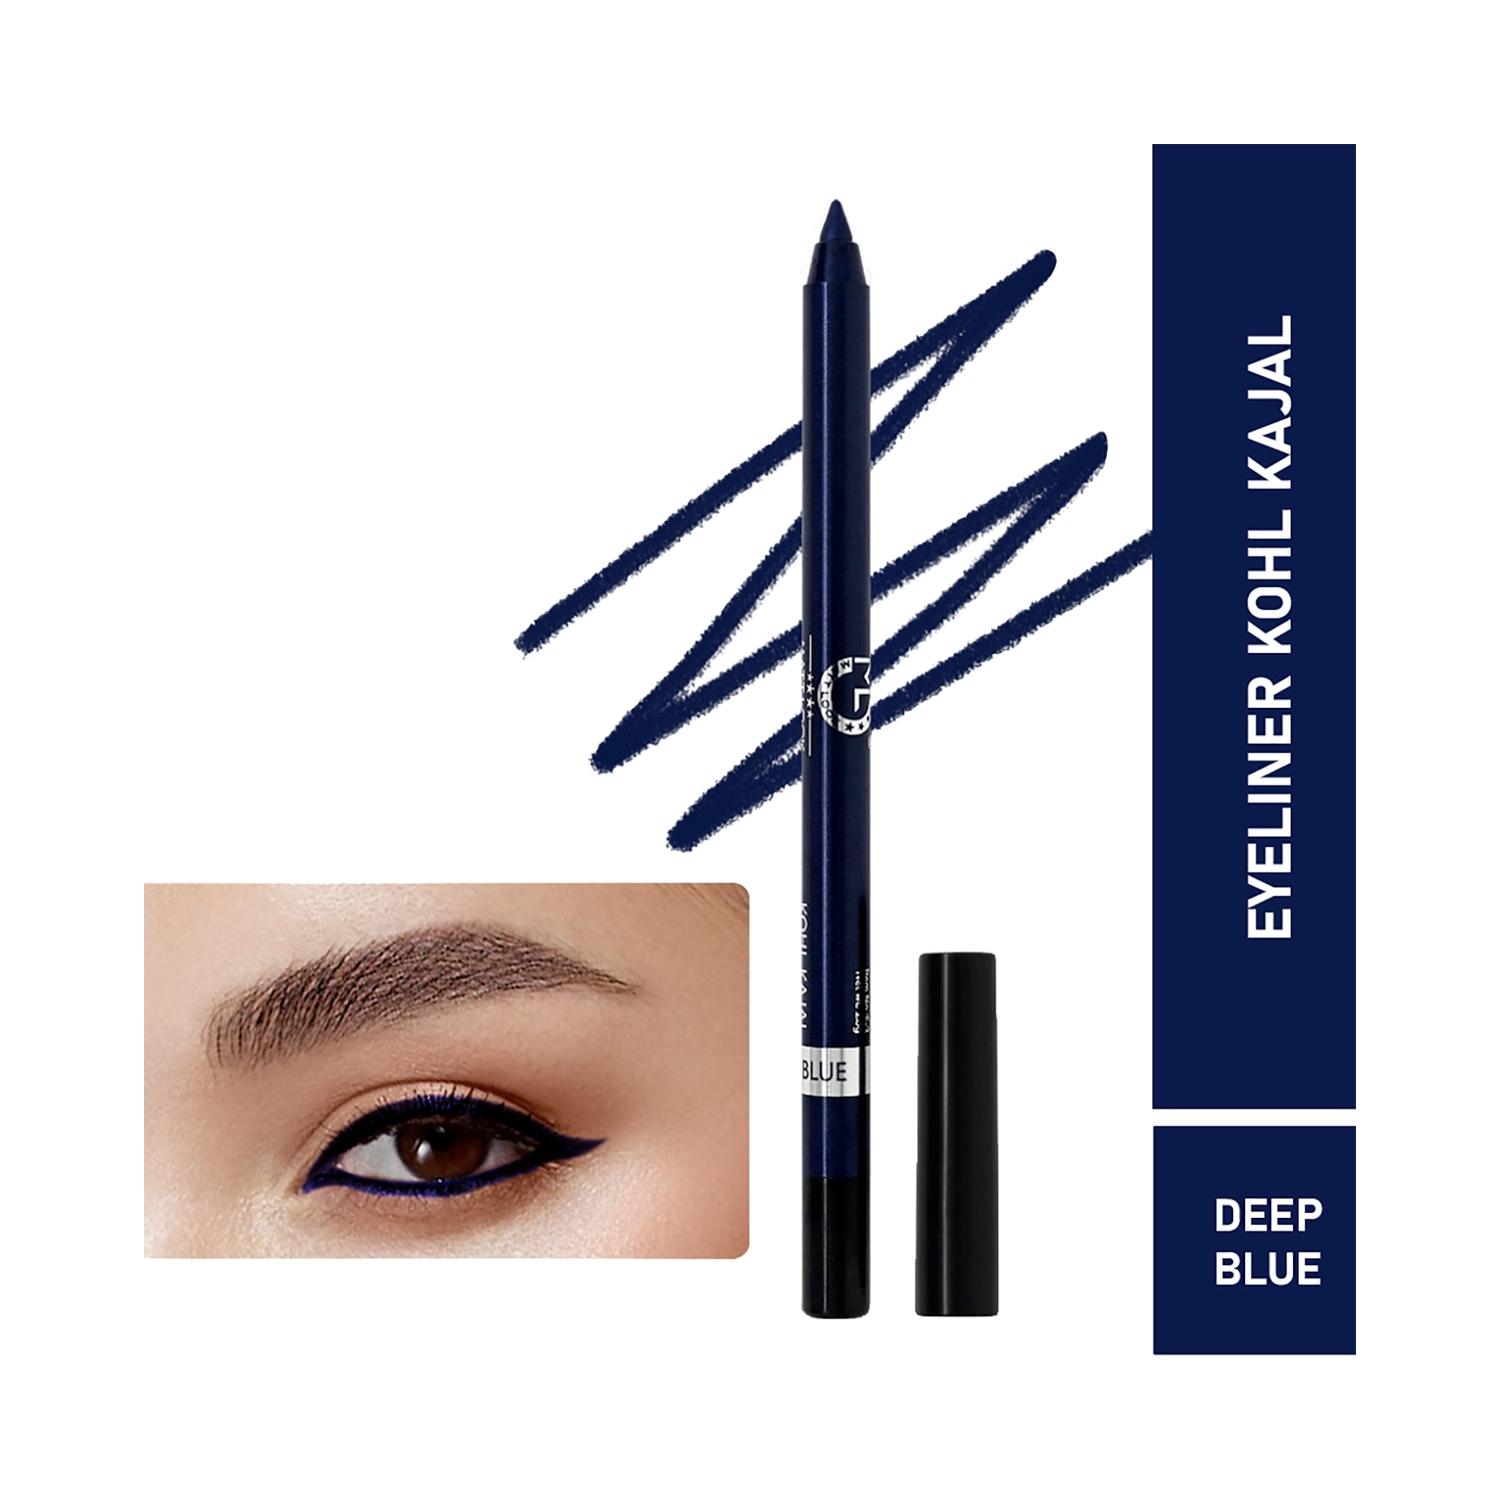 matt look single stroke super glide eyeliner kohl kajal - deep blue (1.3g)